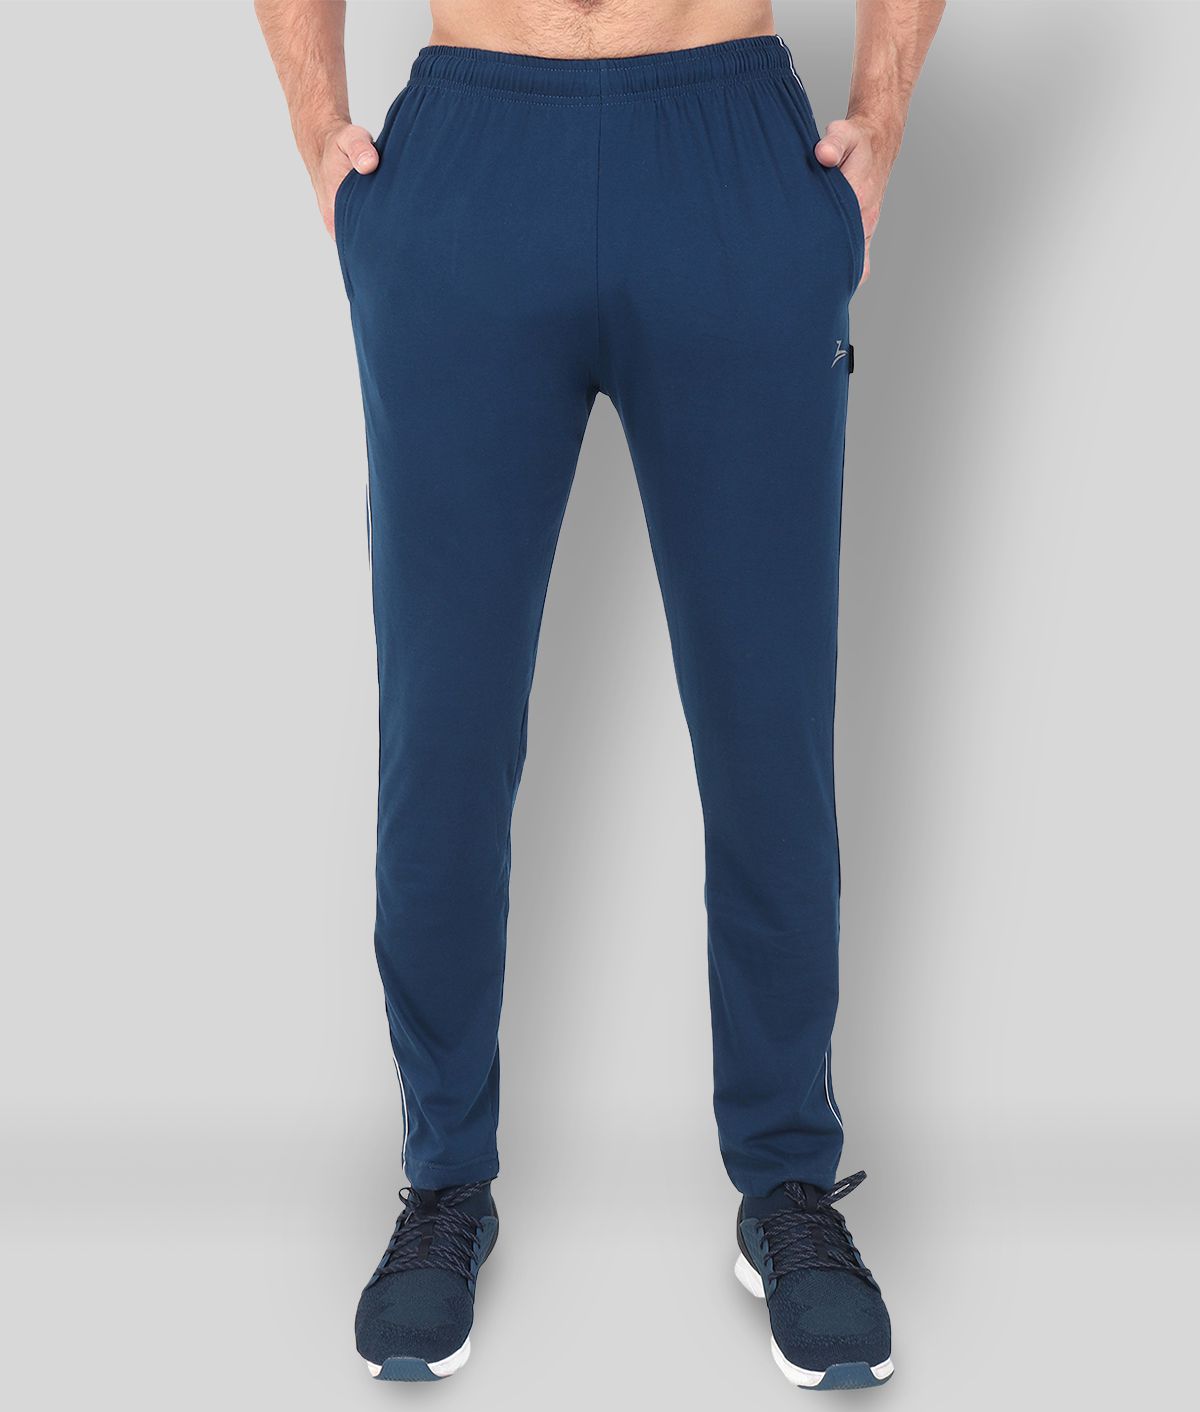 Zeffit - Blue Cotton Blend Men's Trackpants ( Pack of 1 )